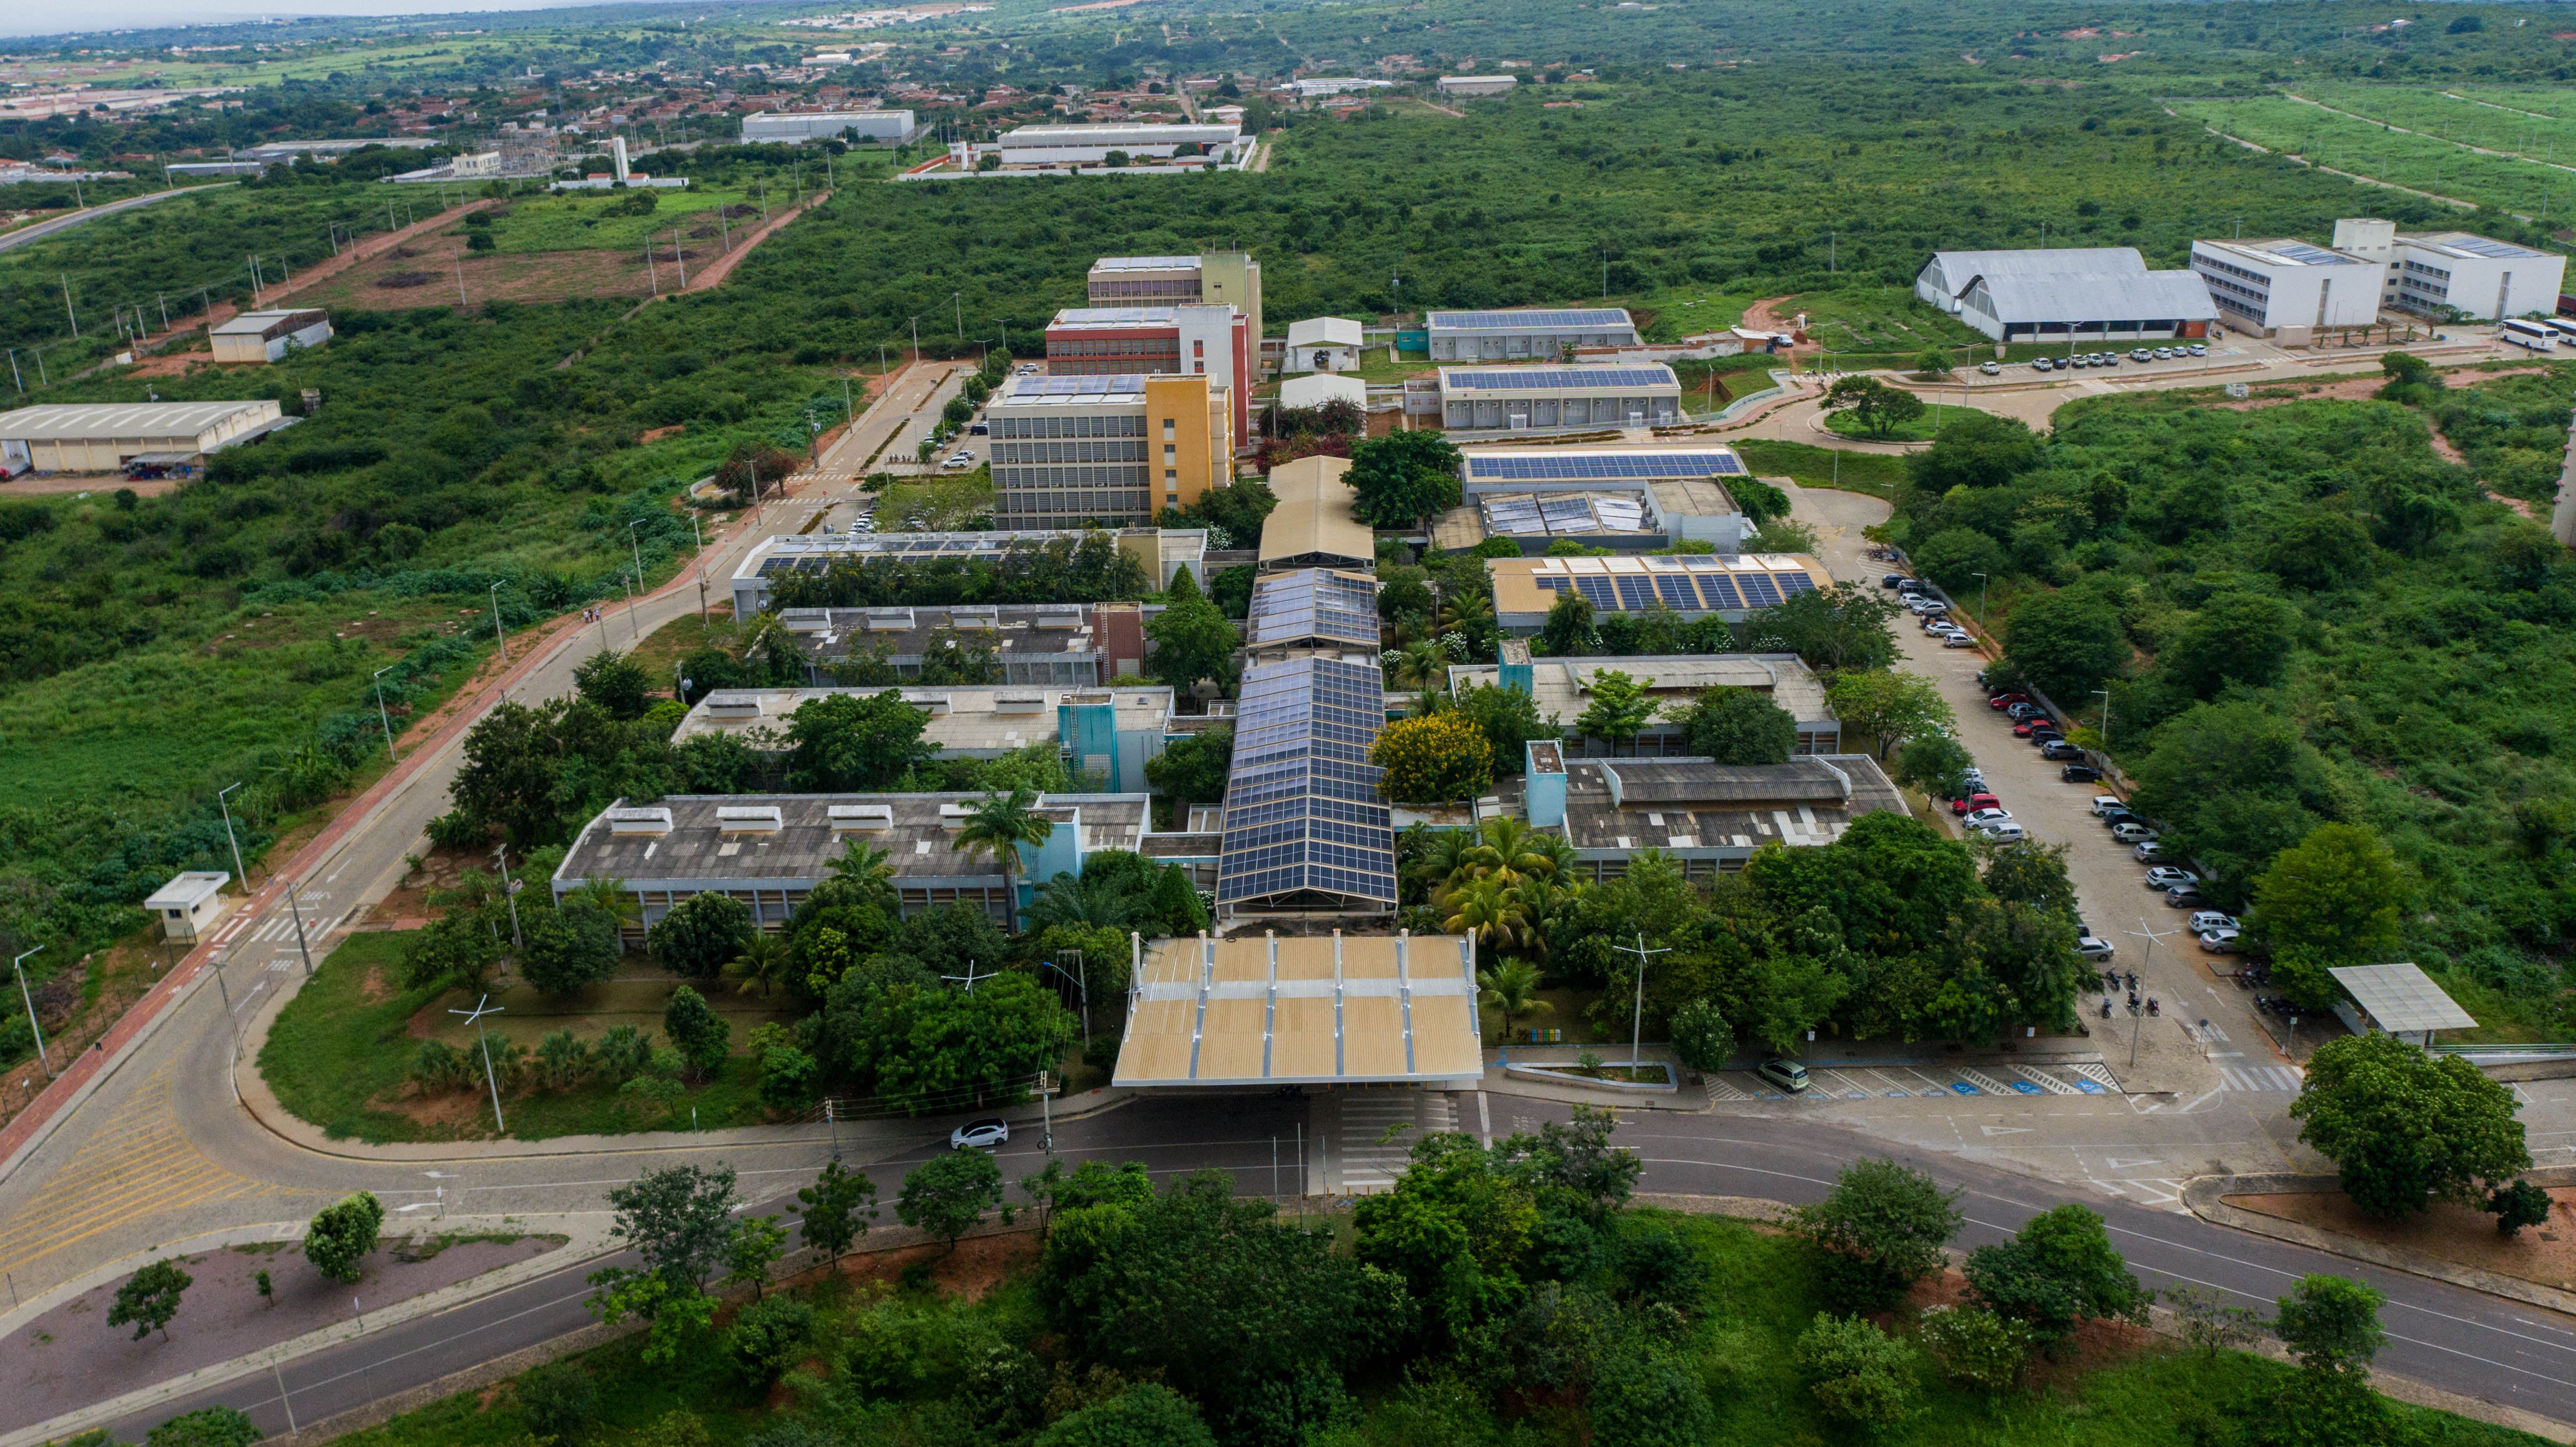 Vista aérea frontal do campus Juazeiro